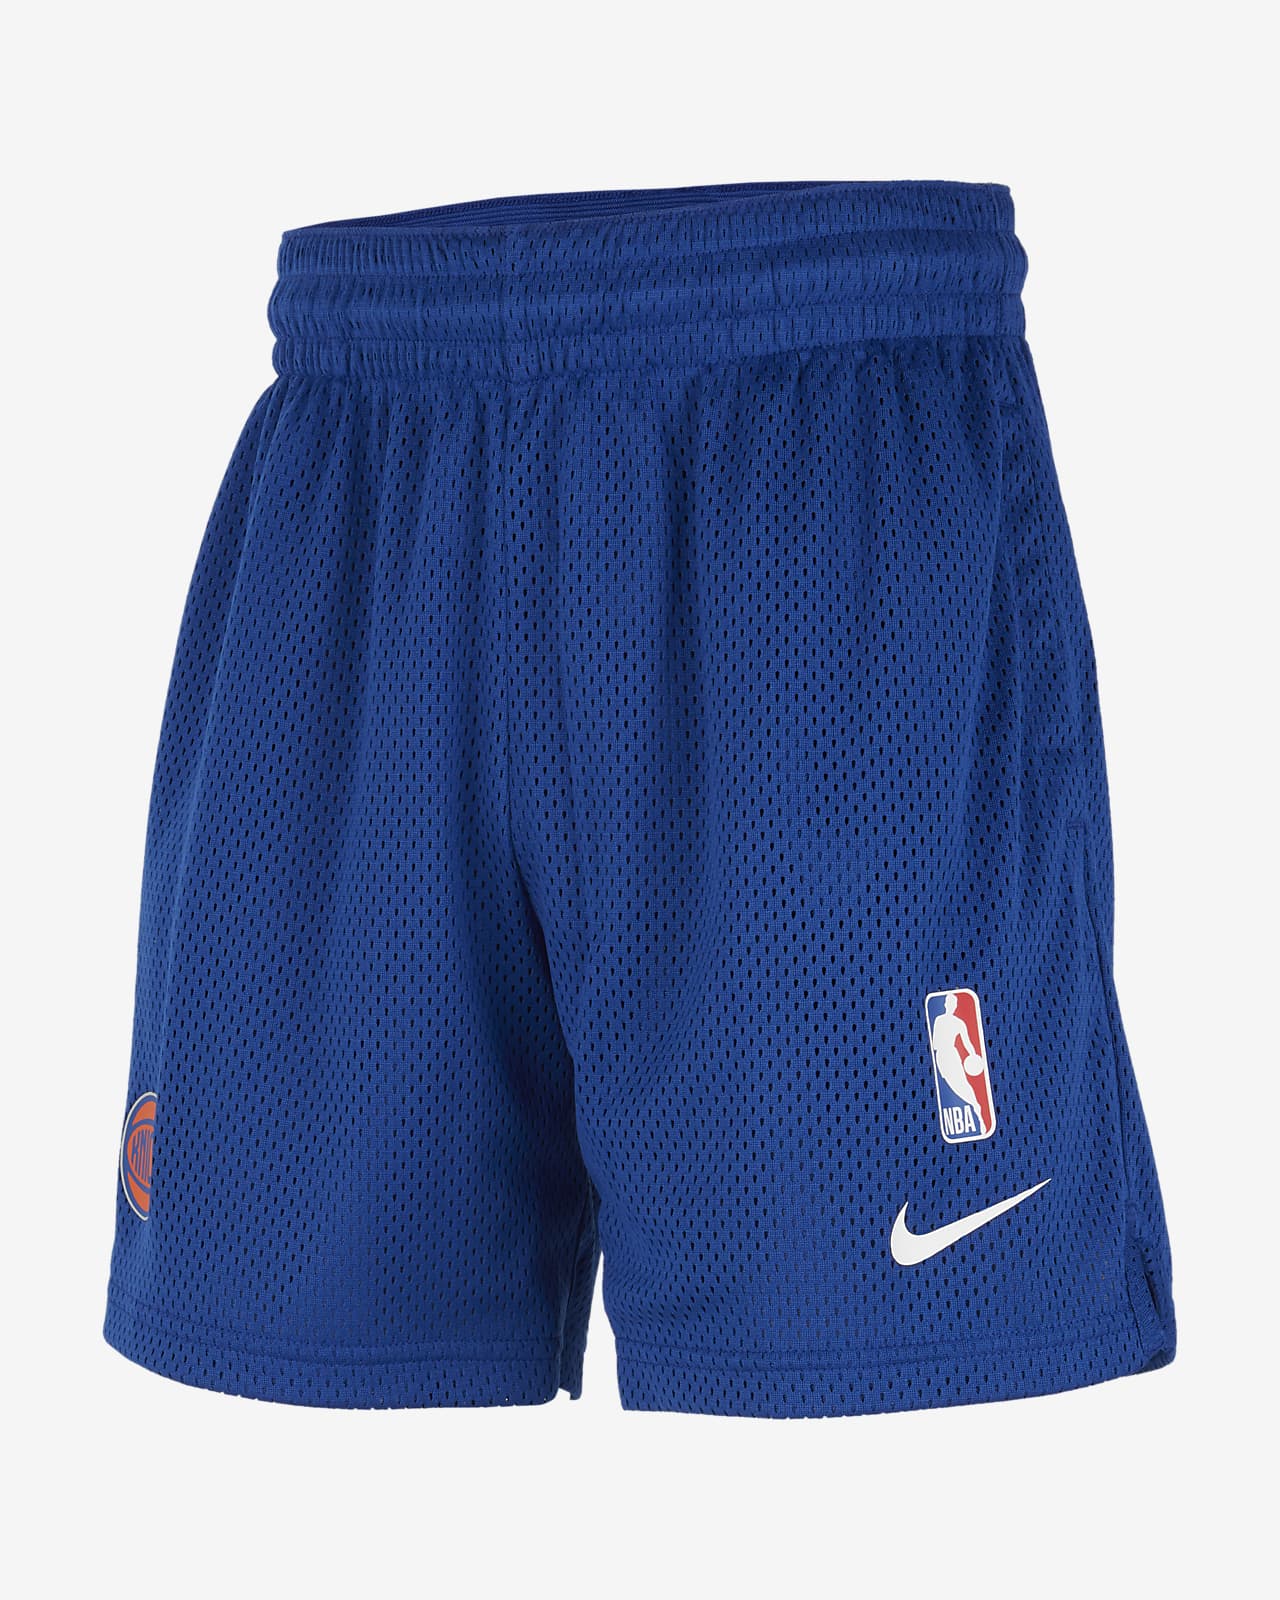 New York Knicks Spotlight Big Kids' Nike Dri-FIT NBA Shorts